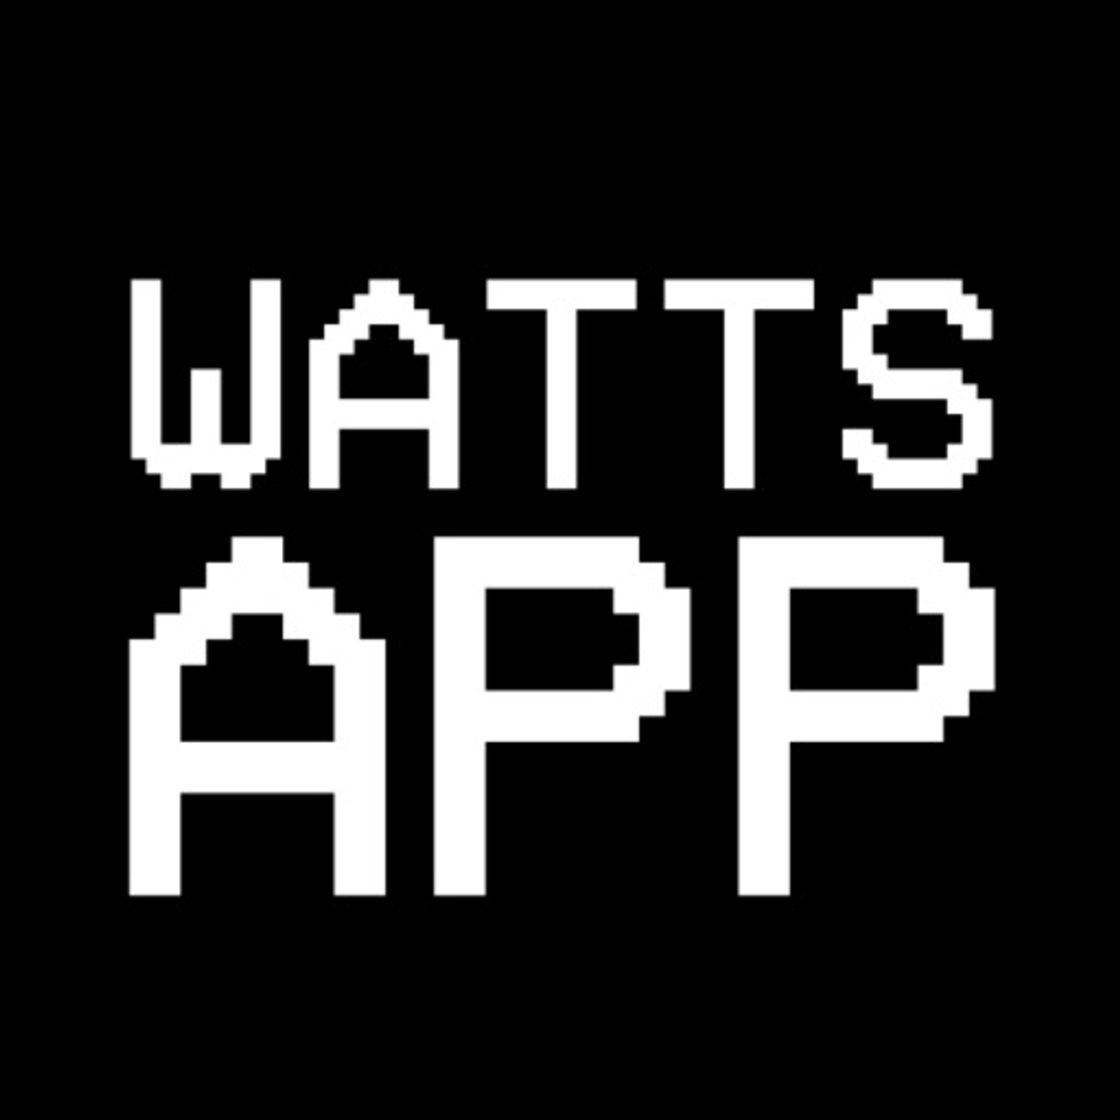 WattsApp by Reggie Watts